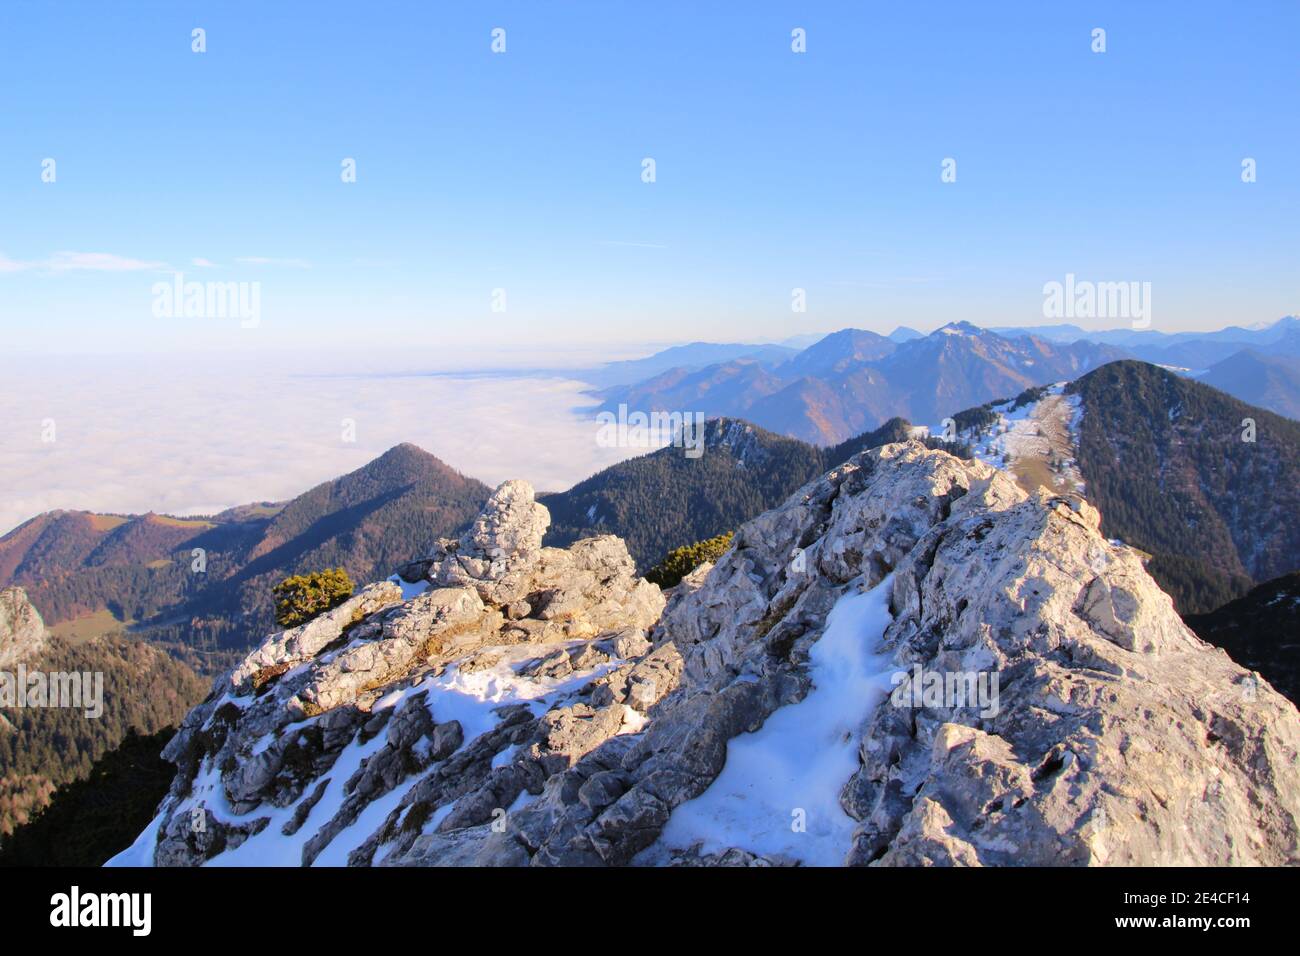 Wanderung zum Gipfel der Kampenwand (1669 m) im Chiemgau, Chiemgauer Alpen, bei Aschau, Oberbayern, Bayern, Süddeutschland, Deutschland Stock Photo